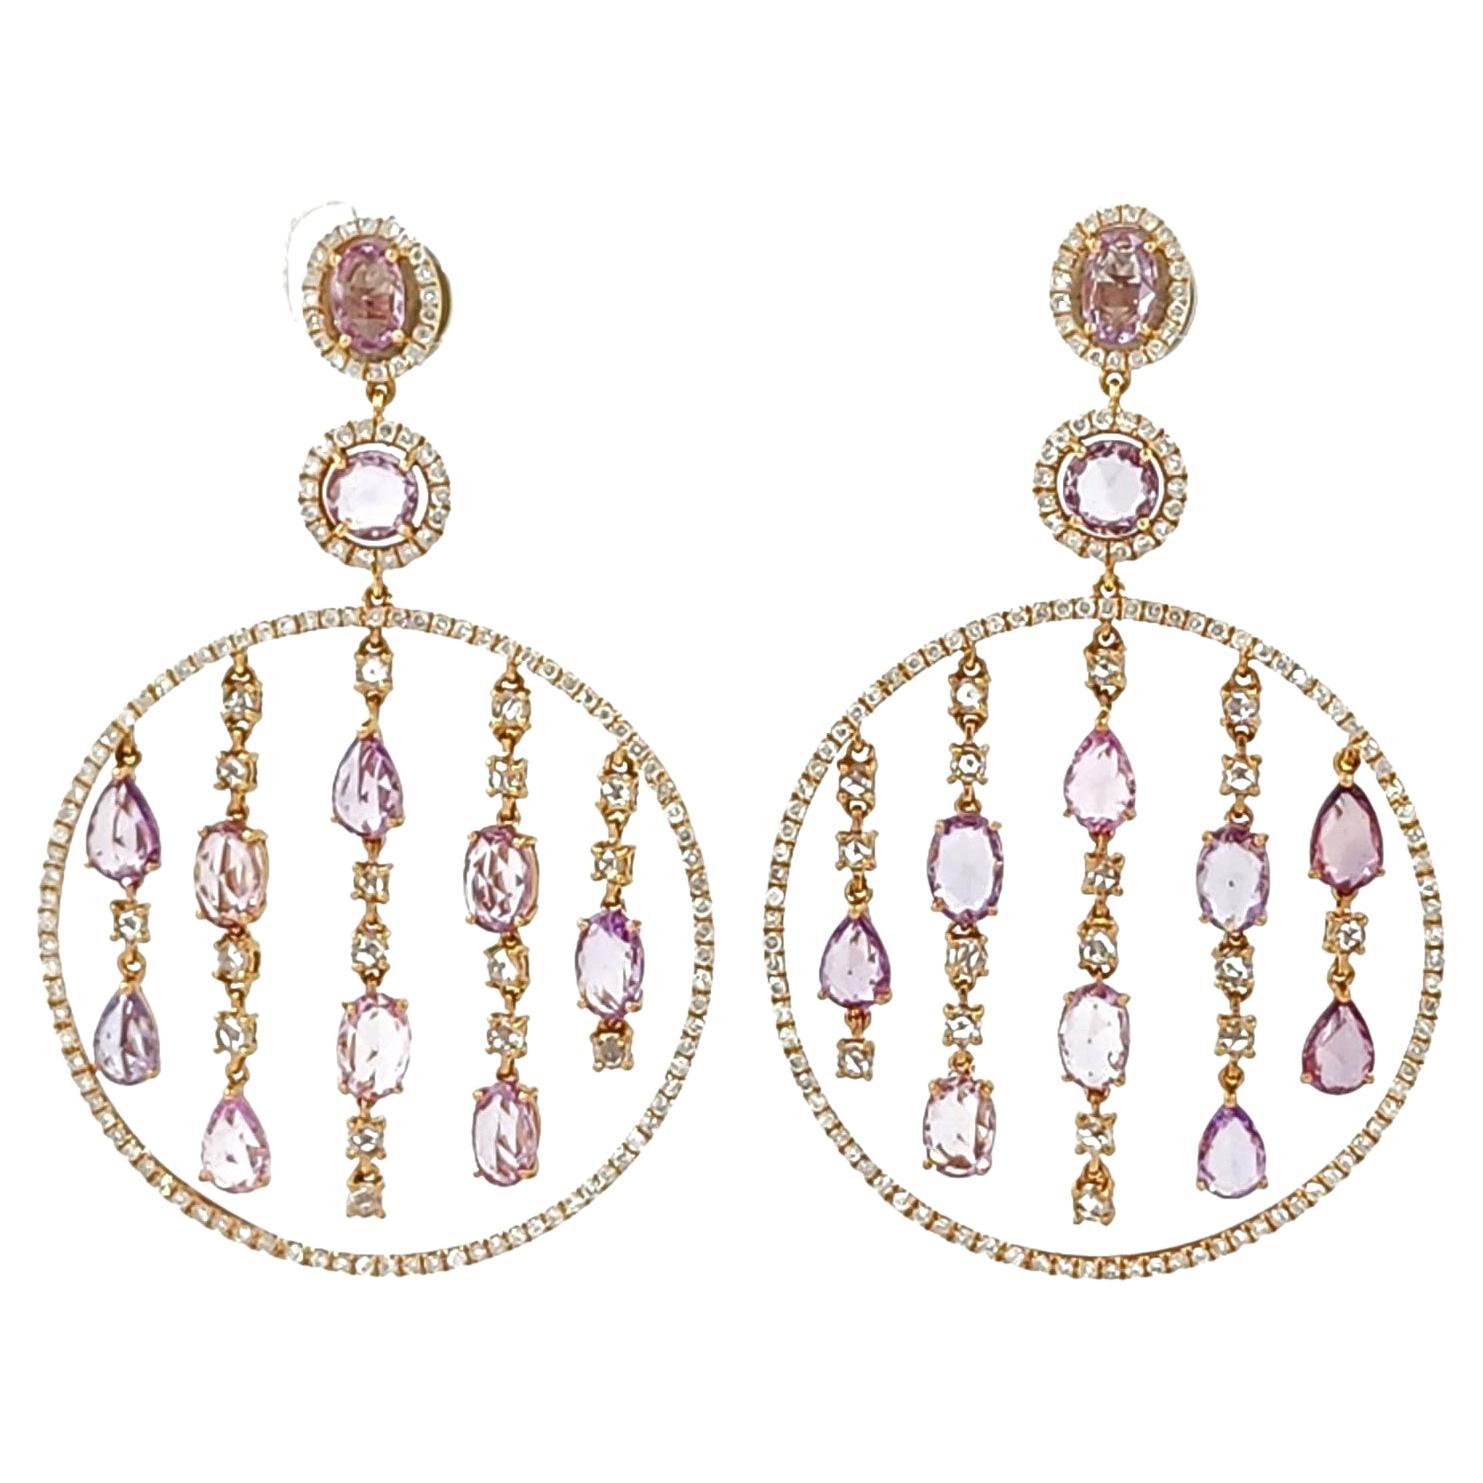 Boucles d'oreilles chandelier vintage en or rose 18 carats avec saphir rose fantaisie et diamants 11,75 carats